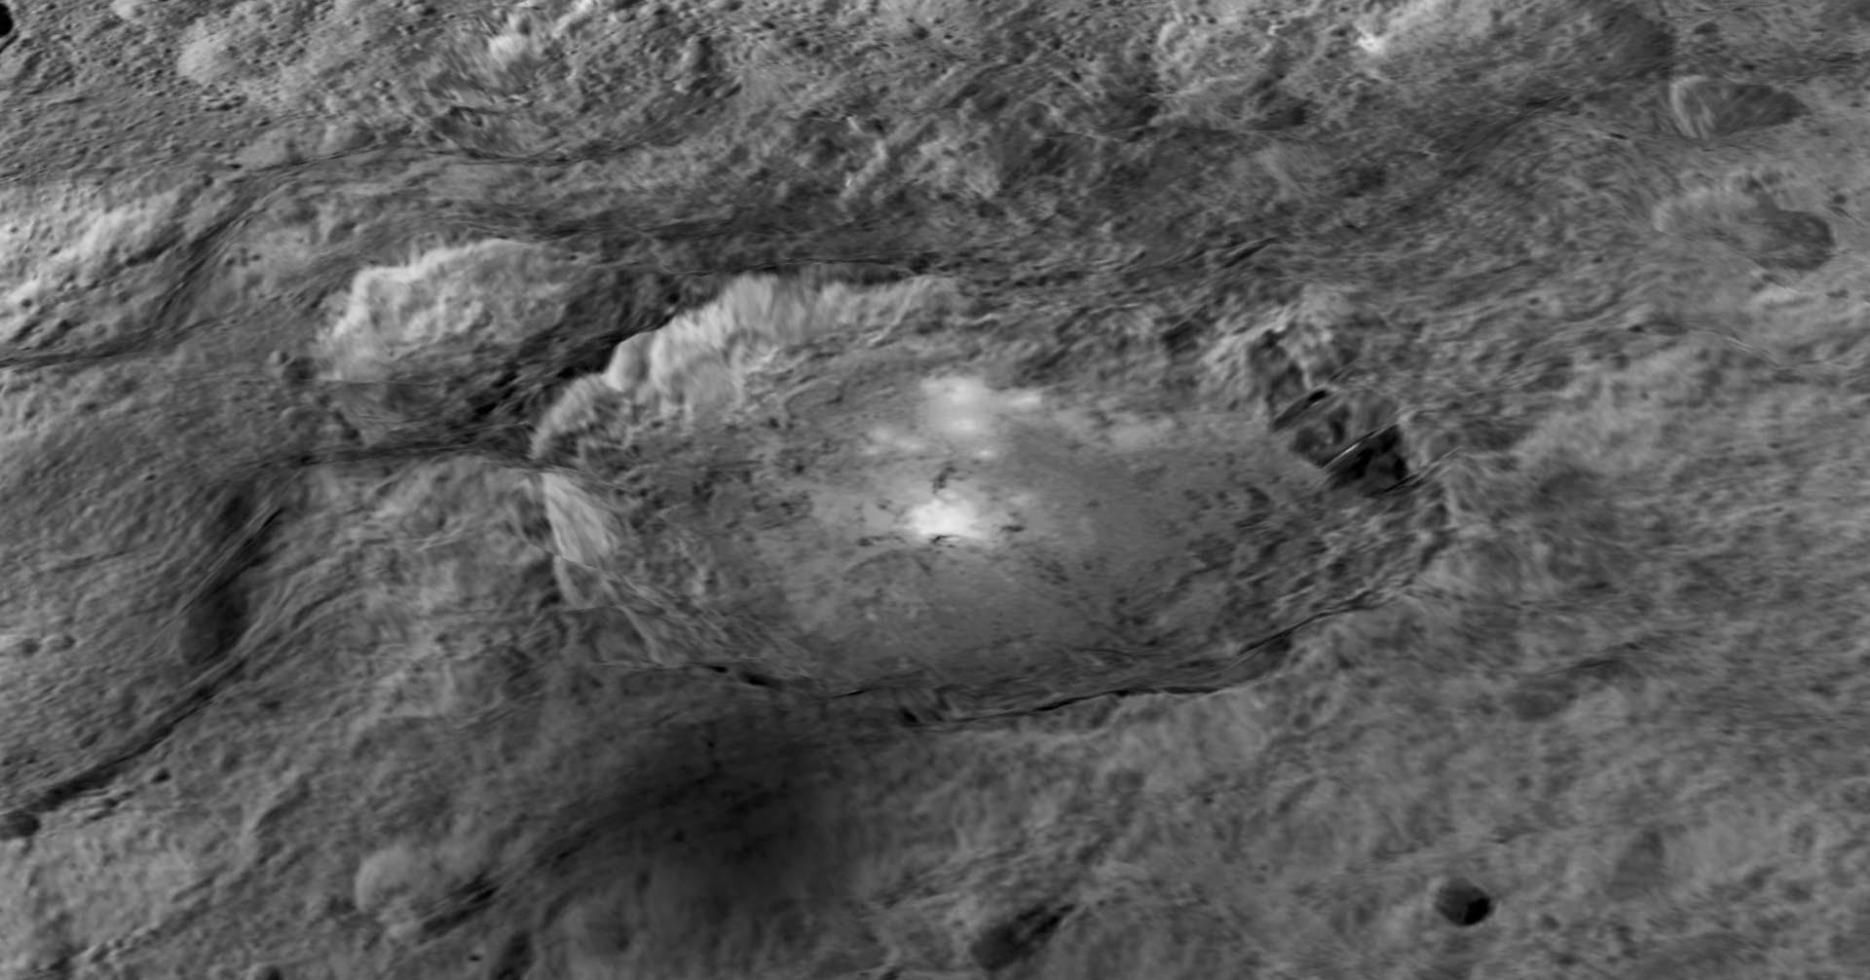 美国宇航局的“黎明”号探测器目前仍然运行在谷神星的轨道上，此前科学家发现谷神星上存在一座巨大的山脉，从外形上看，酷似埃及的金字塔。金字塔山脉的高度为6000米，